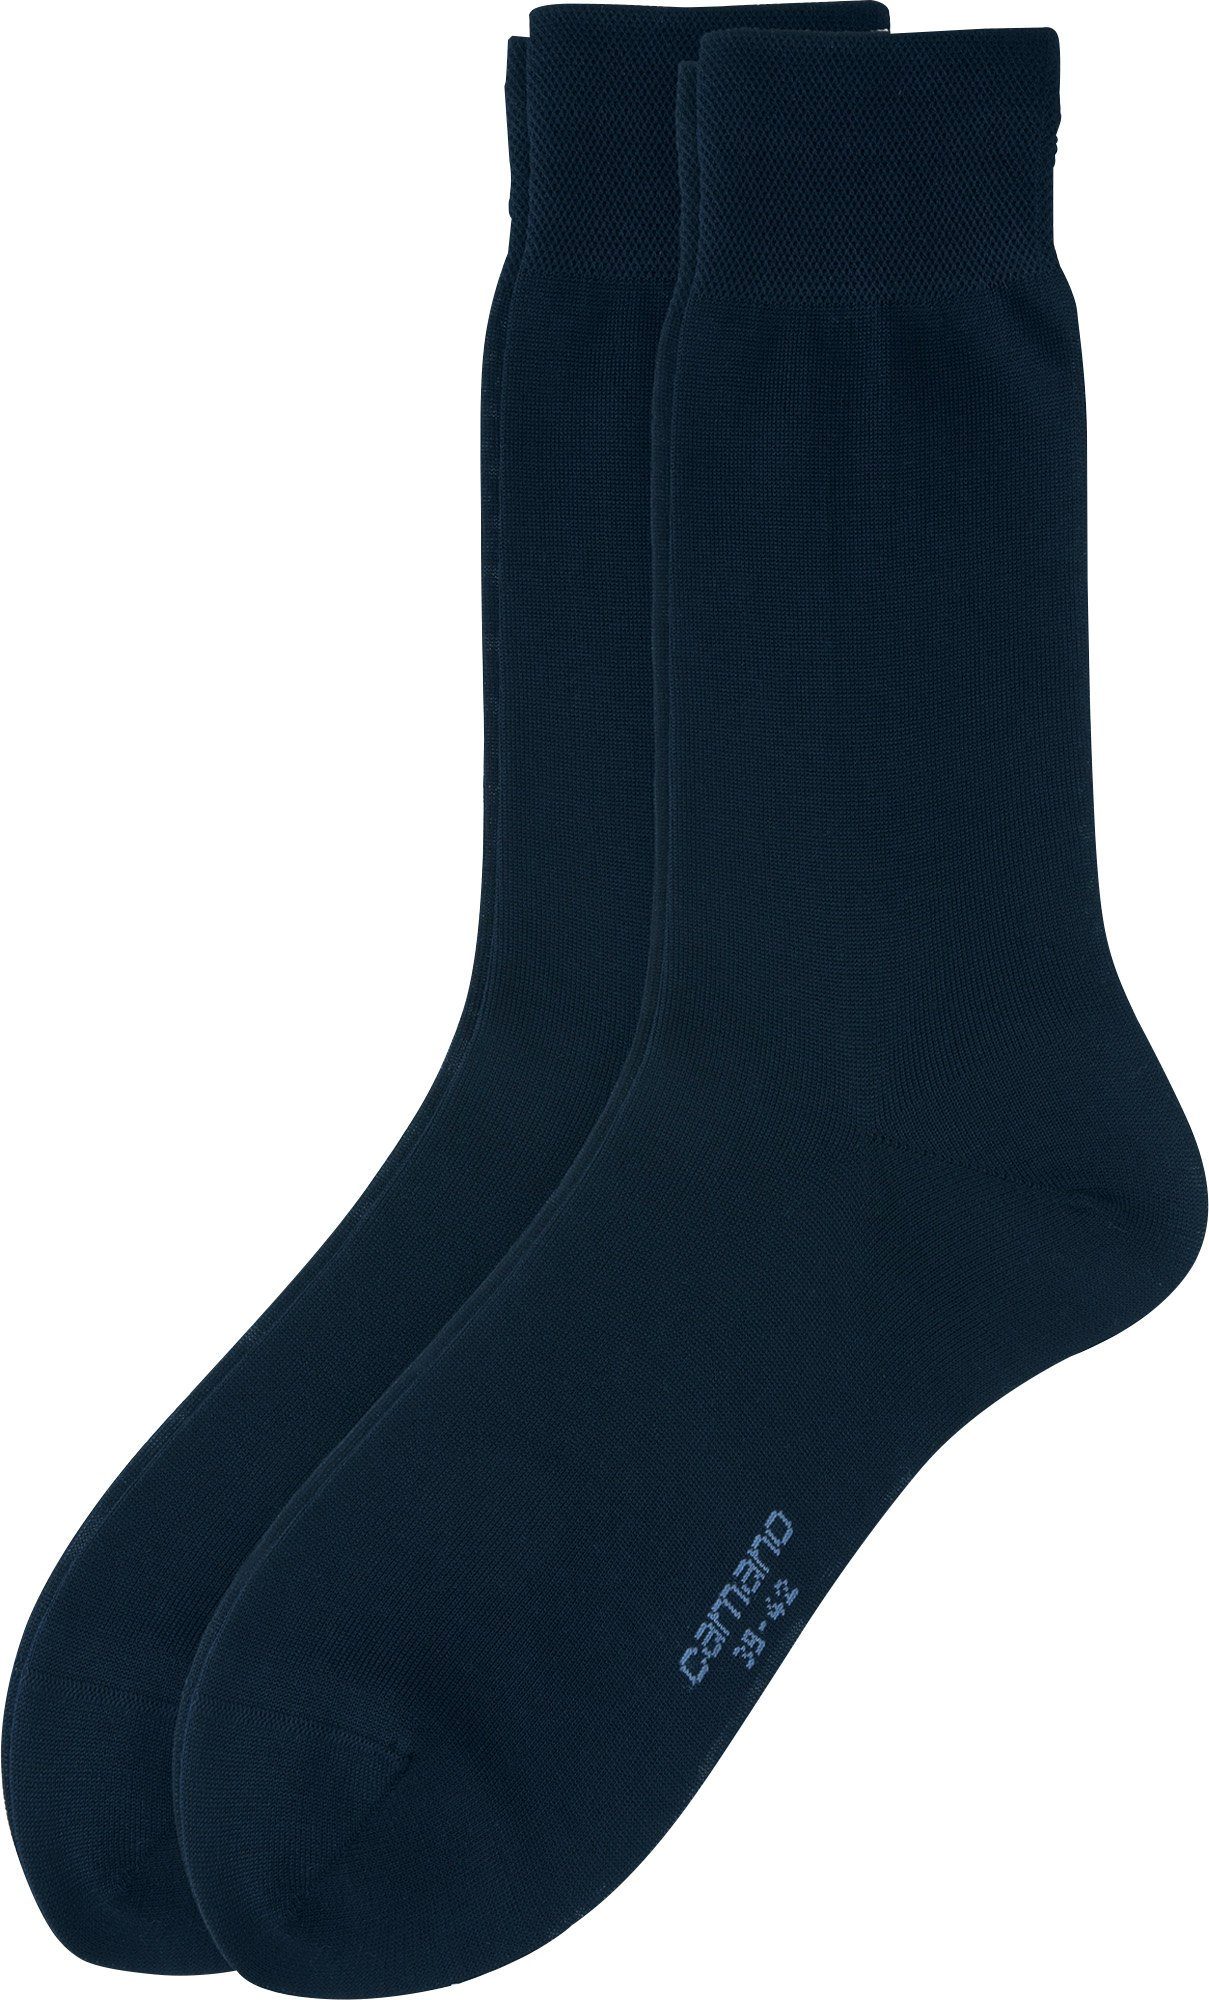 Camano Socken Herren Business-Socken 2 Paar Uni dunkelblau | Socken